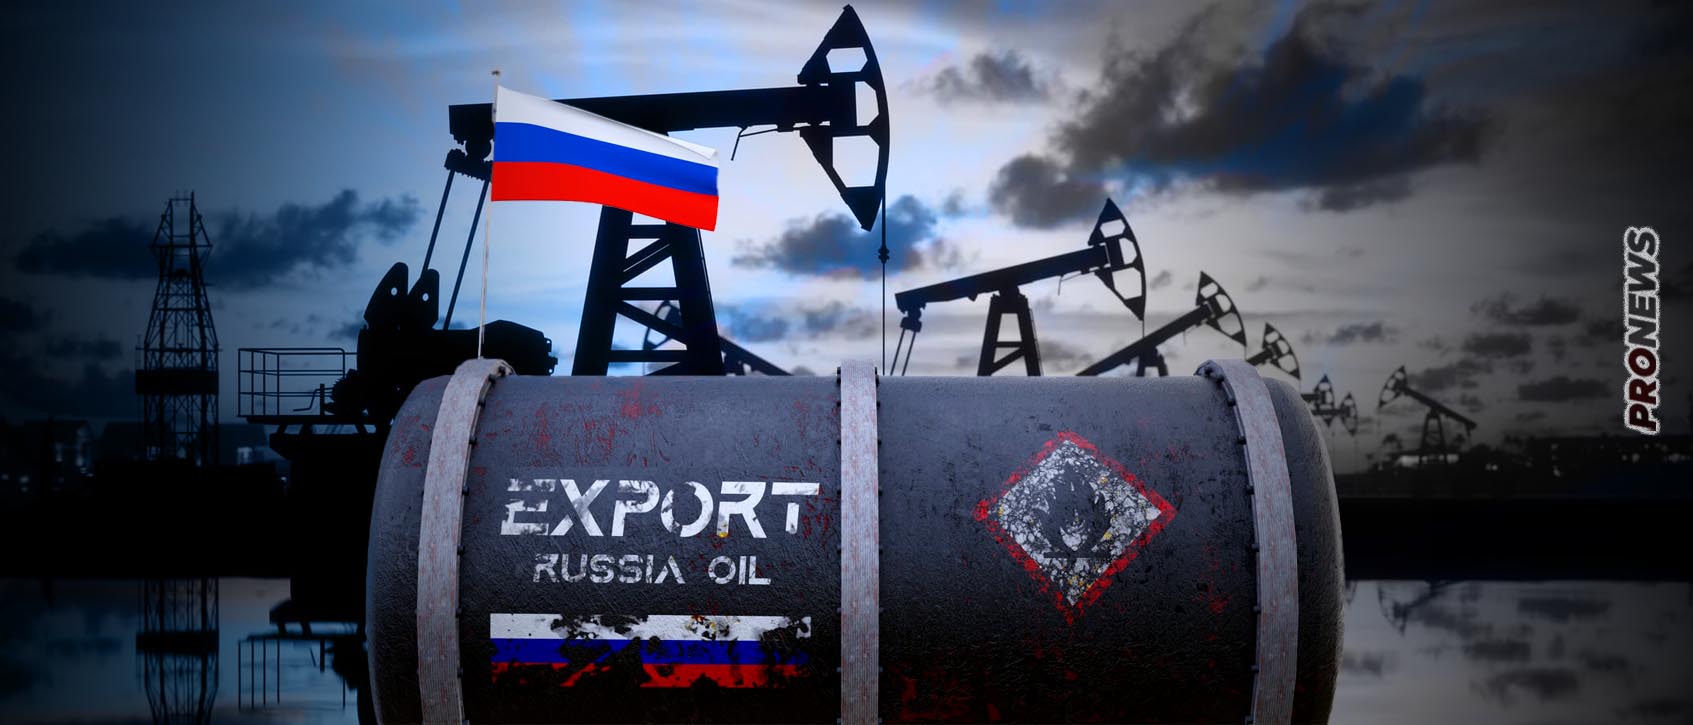 Η Ρωσία πρώτη εξαγωγέας πετρελαίου στον κόσμο παρά τις κυρώσεις και οι ΗΠΑ πρώτες (στην Δύση) στην αγορά… ρωσικού πετρελαίου!